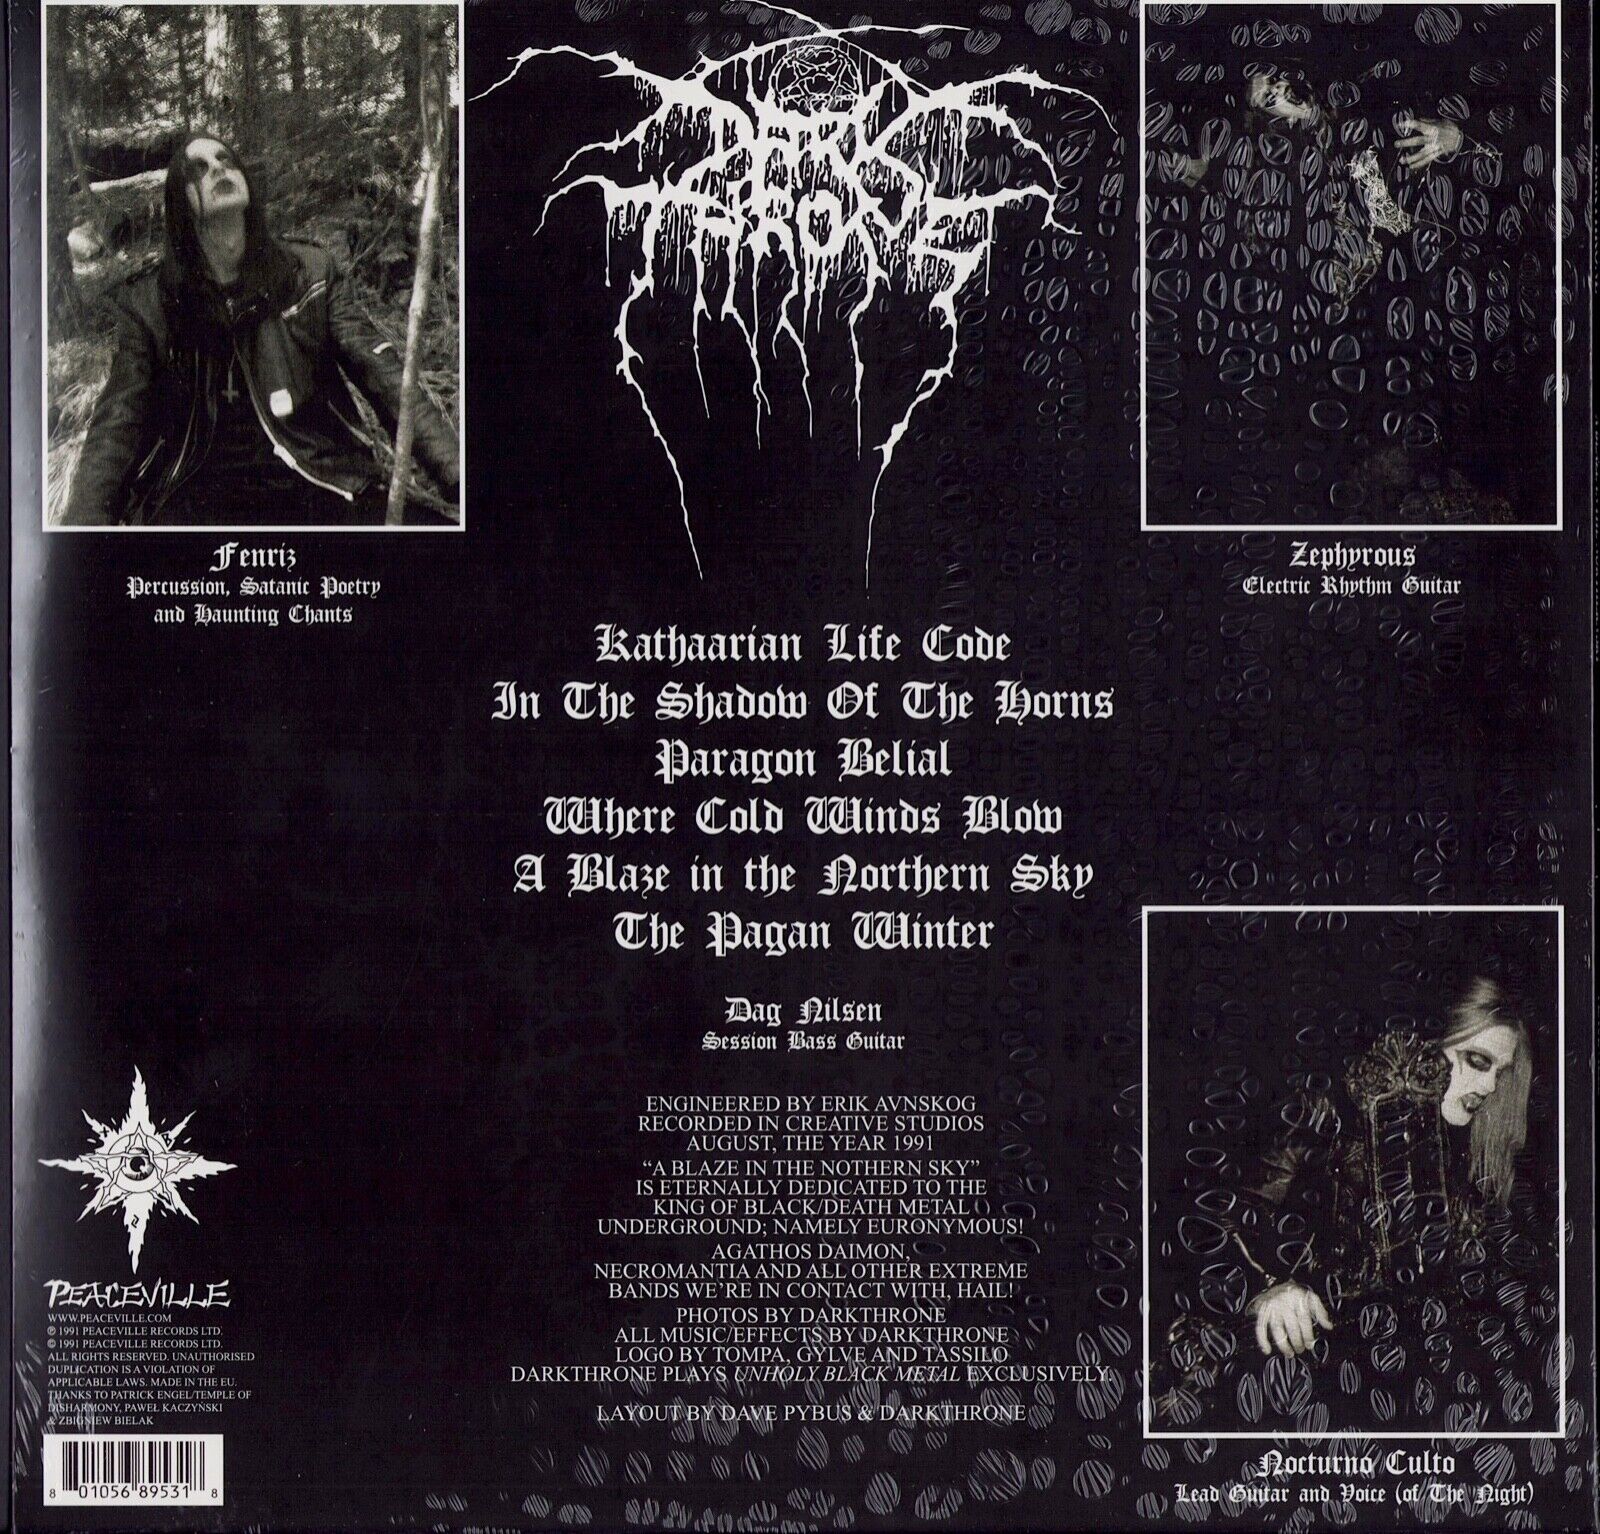 Darkthrone - A Blaze In The Northern Sky White Vinyl LP Limited Edition